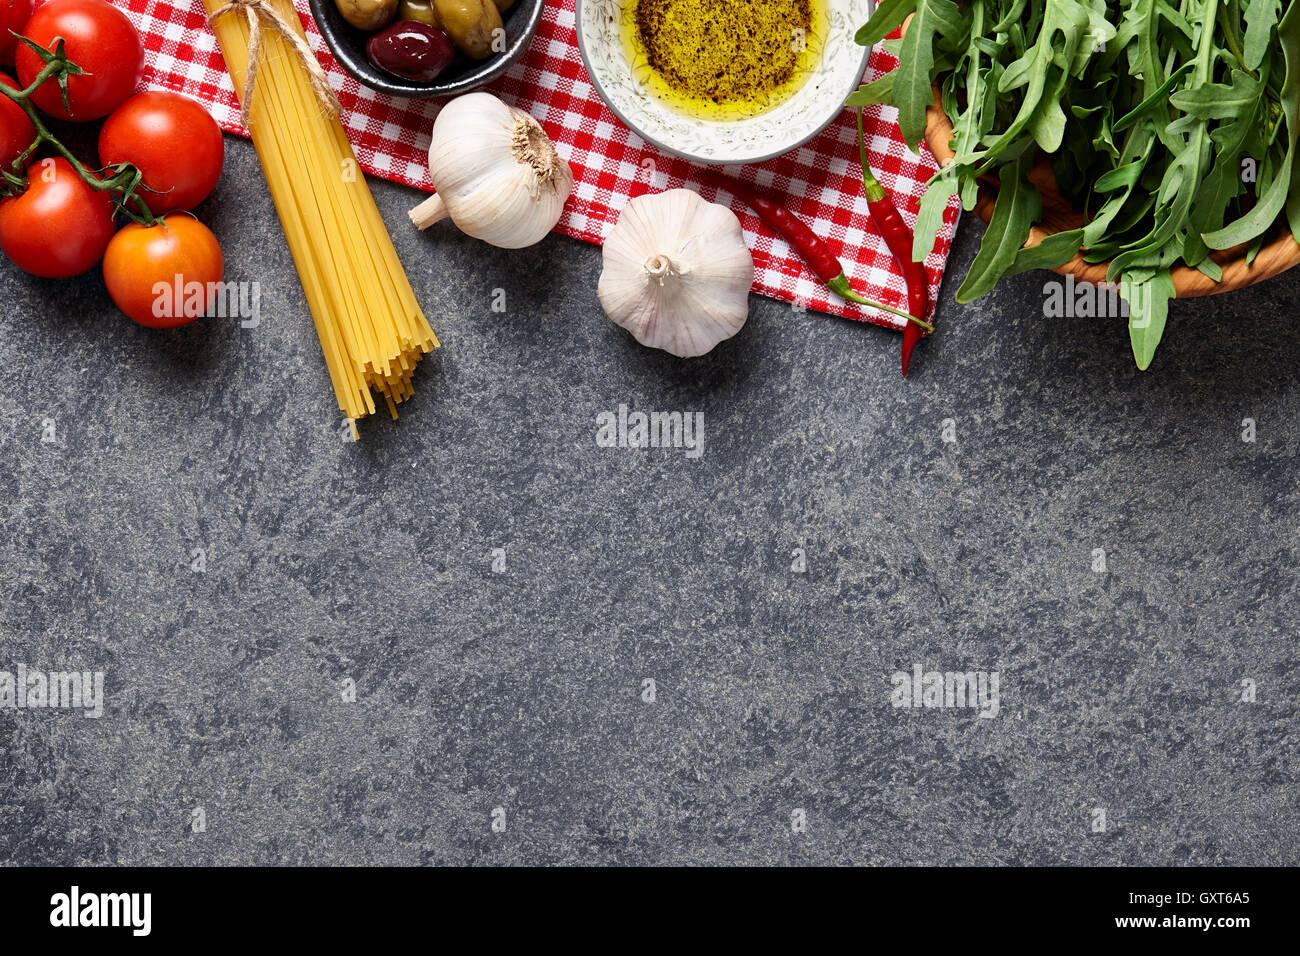 Italienische Küche Zutaten Hintergrund mit rohen Spaghetti, Oliven, Rucola, Knoblauch, Olivenöl und Tomaten. Stockfoto